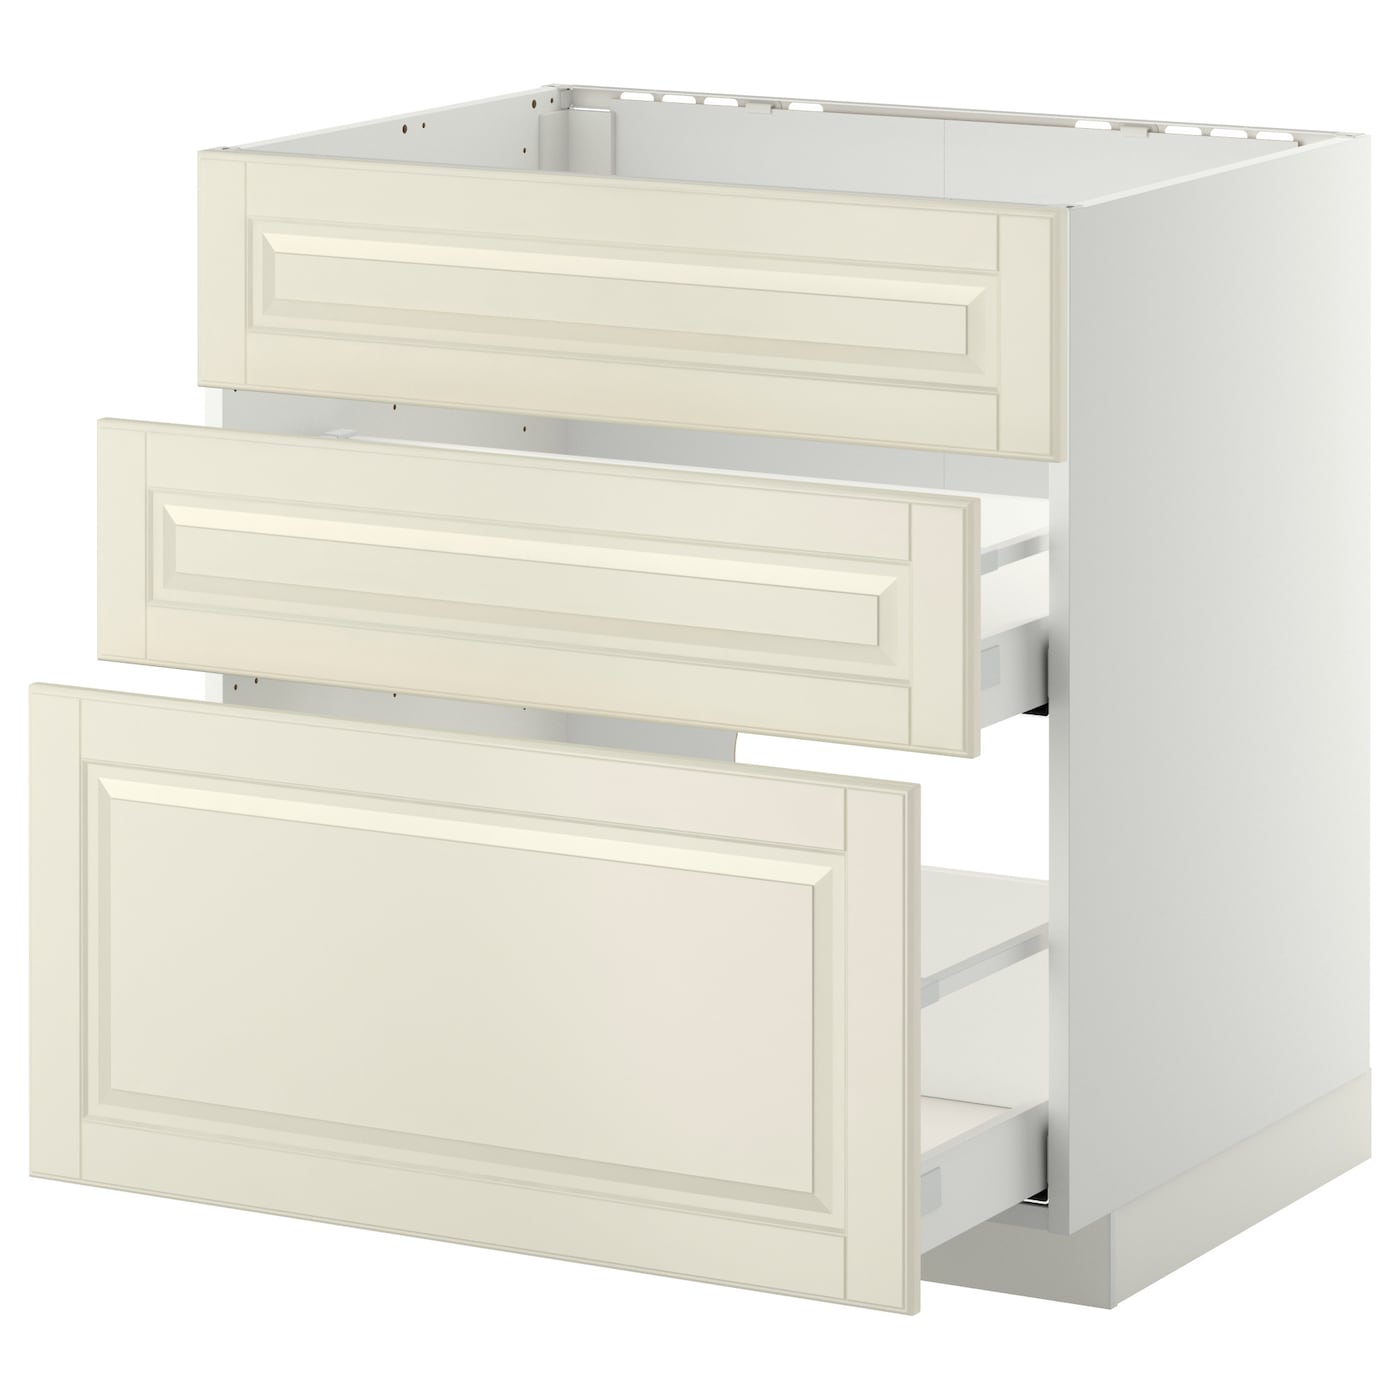 Напольный кухонный шкаф  - IKEA METOD MAXIMERA, 88x62x80см, белый/бежевый, МЕТОД МАКСИМЕРА ИКЕА